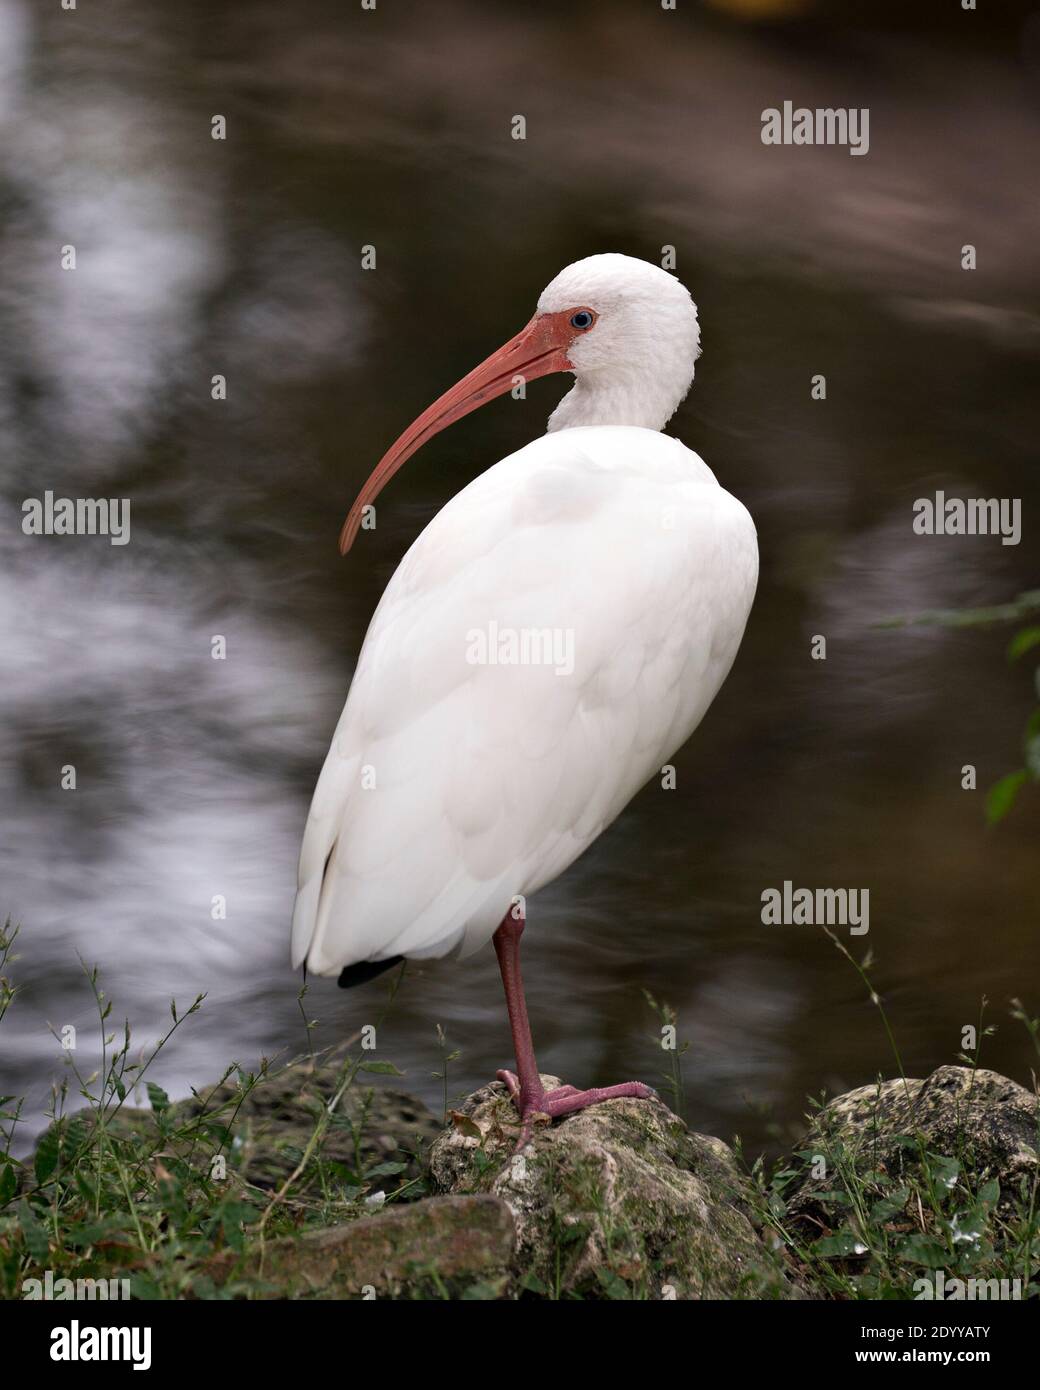 Bianco Ibis vicino all'acqua in piedi su una roccia nel suo ambiente e habitat con uno sfondo di acqua sfocata. Bianco Ibis Stock foto. Ibis Image. Immagine. Foto Stock